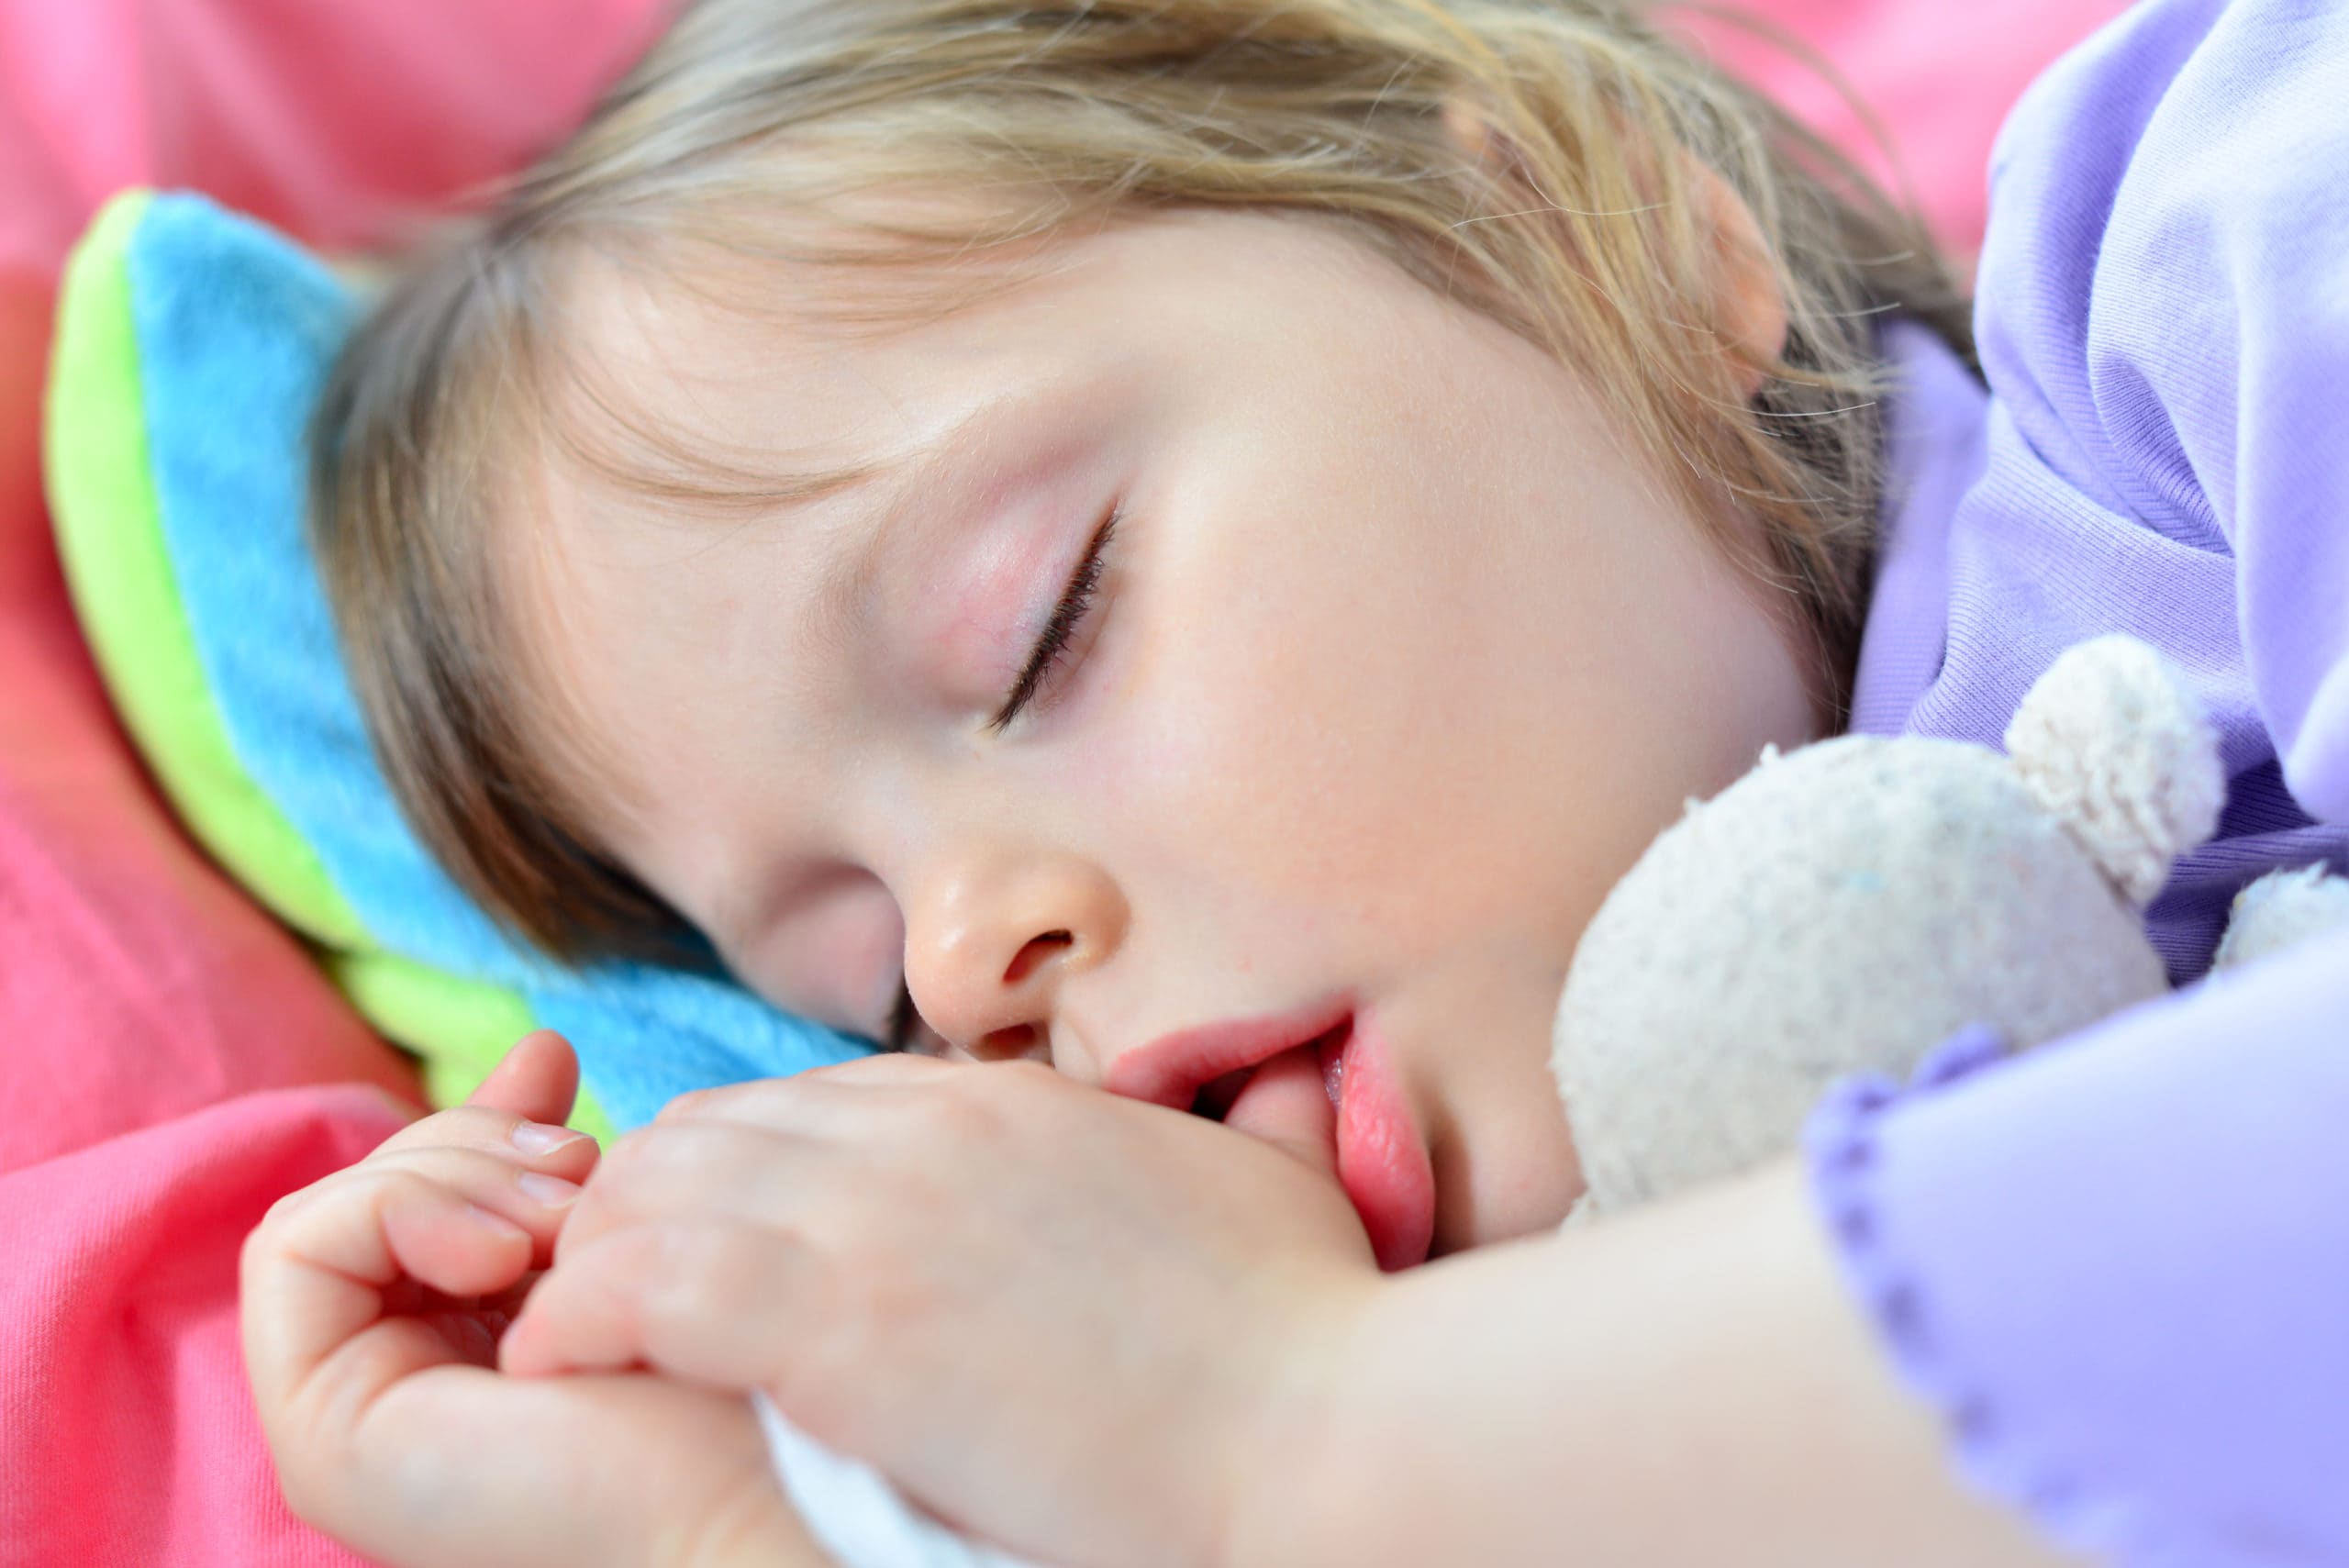 Сосание девочки. Дети спят с открытыми ртами. Спящие дети с открытым ртом. Ребенок с пальцем во рту.